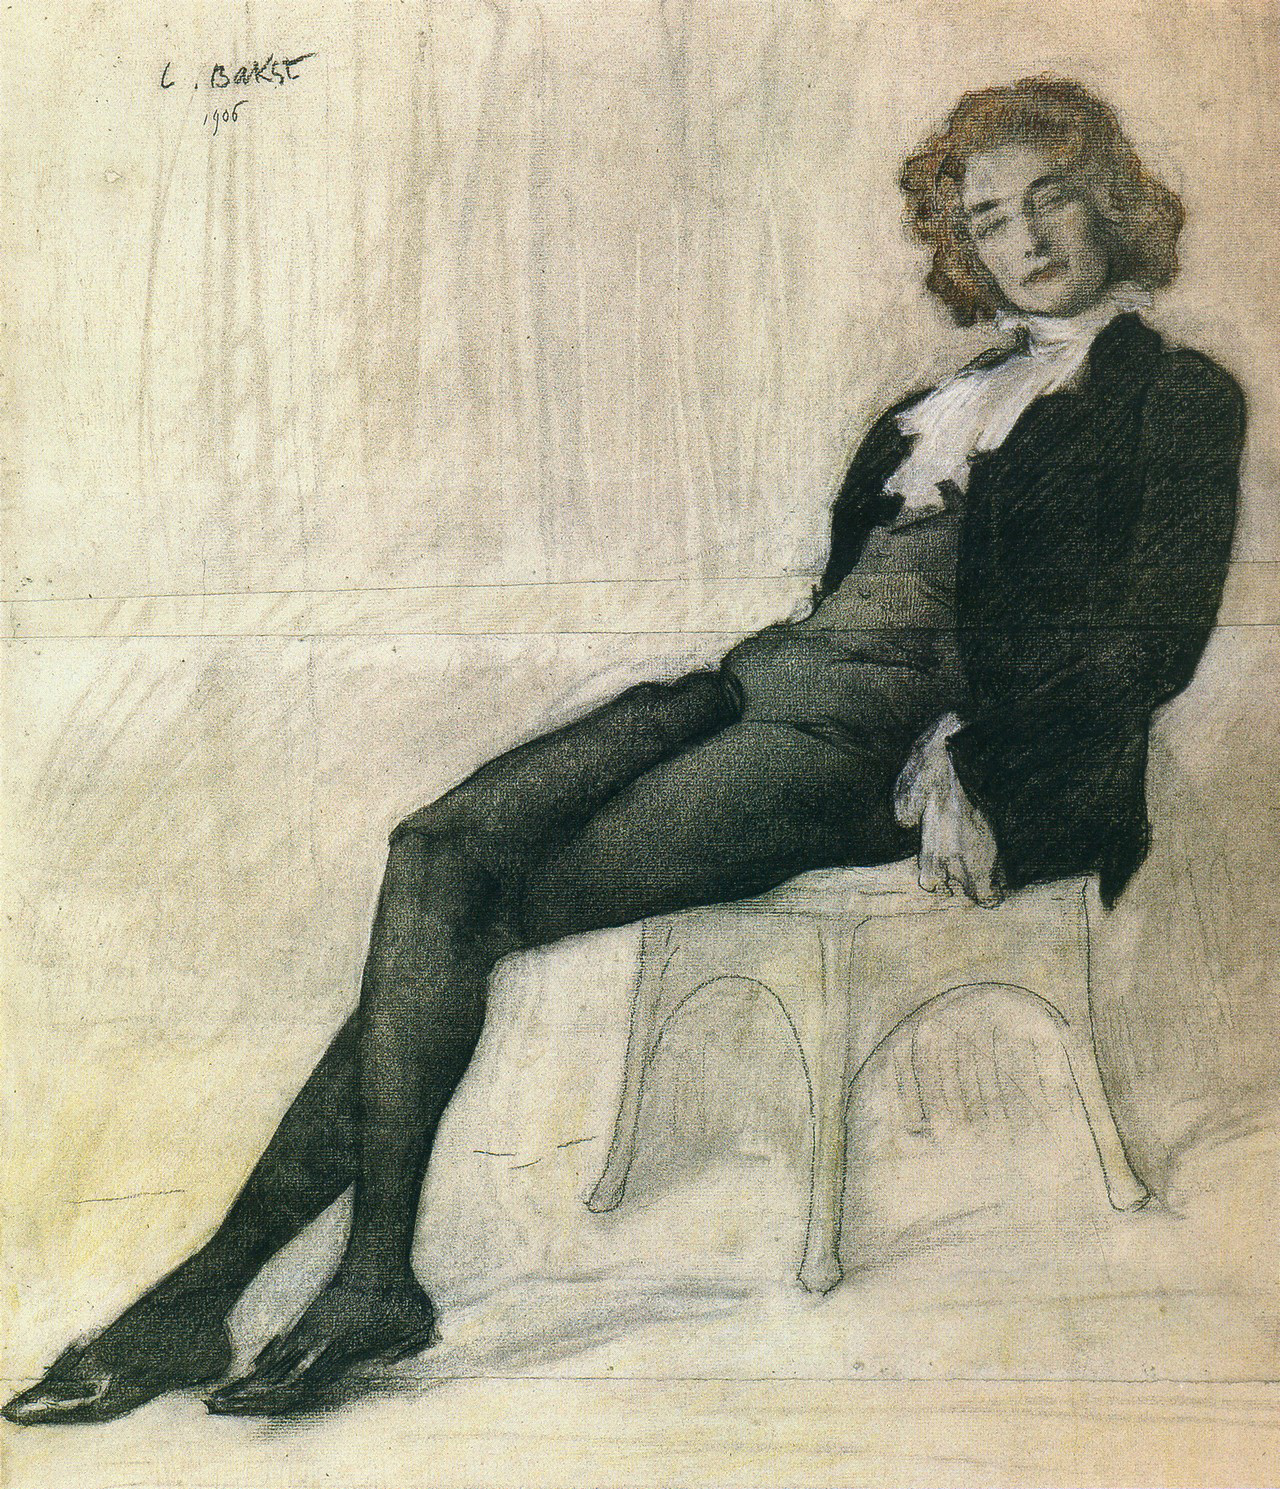 Portrait par Léon Bakst, 1906